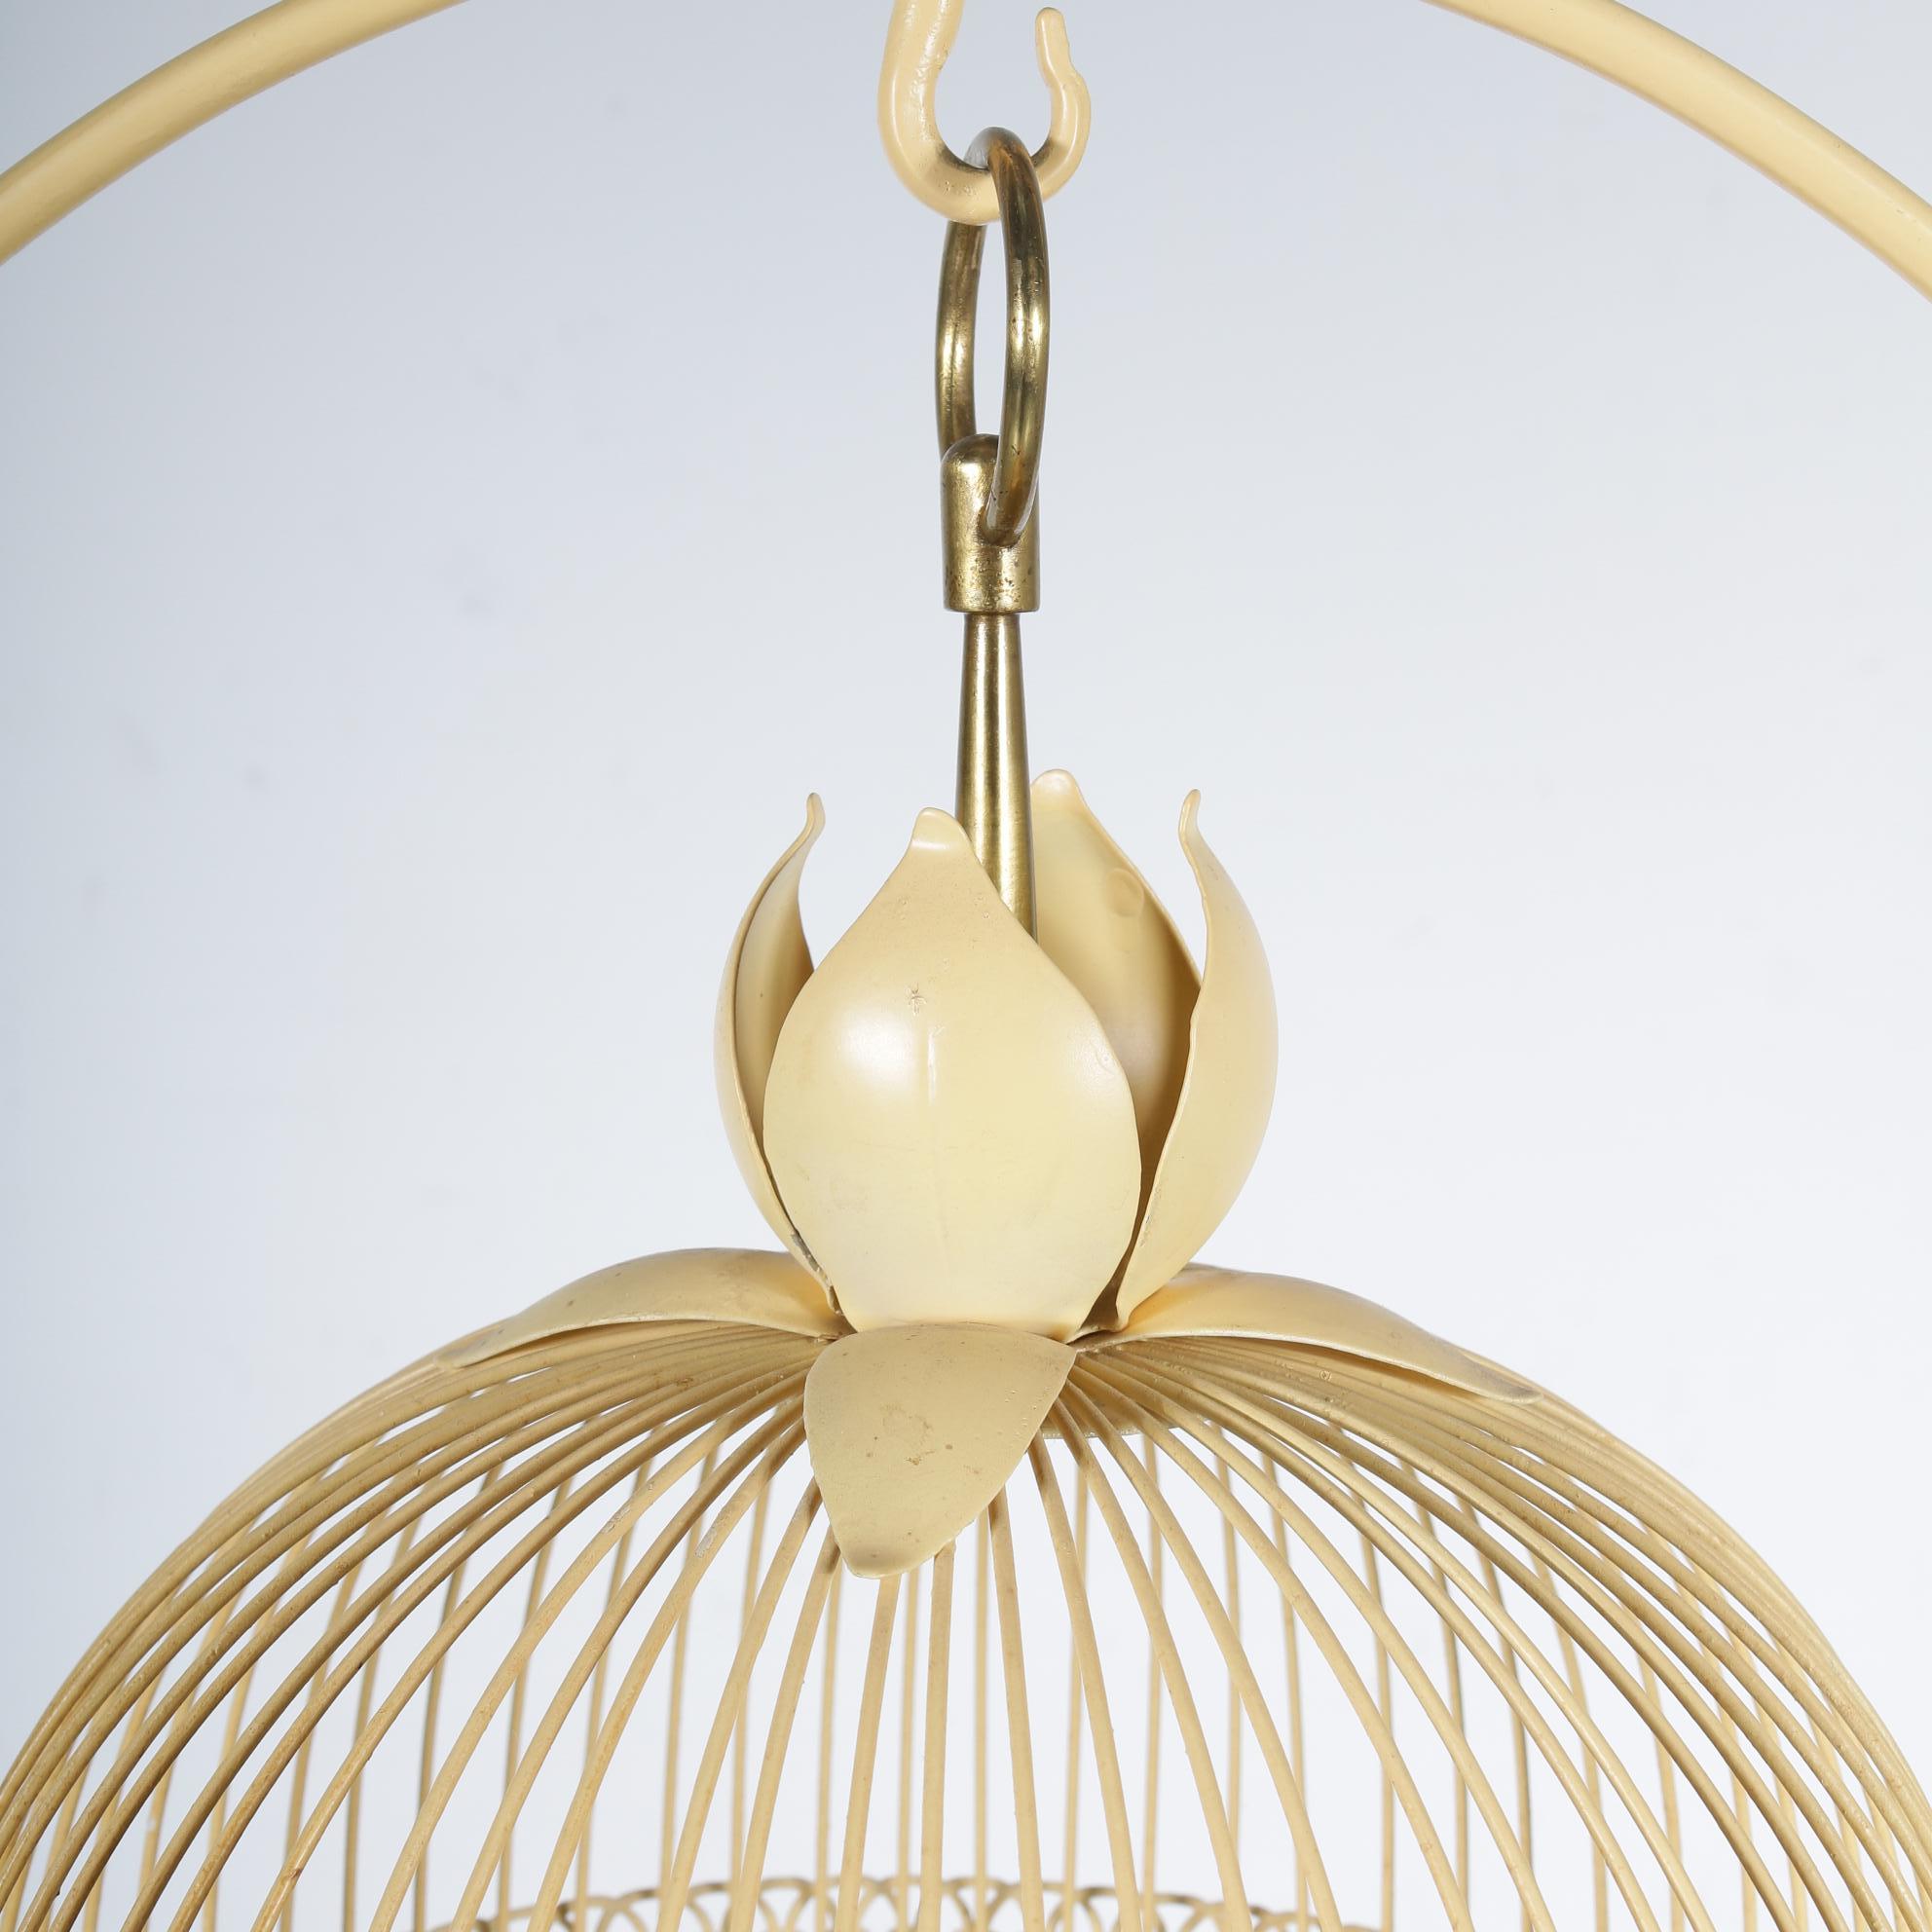 Une belle cage à oiseaux en métal sur un support très décoratif, fabriquée en France, vers 1950.

Cette pièce accrocheuse est fabriquée en métal laqué jaune dans un style magnifique, conçu avec un grand souci du détail. La cage elle-même a une